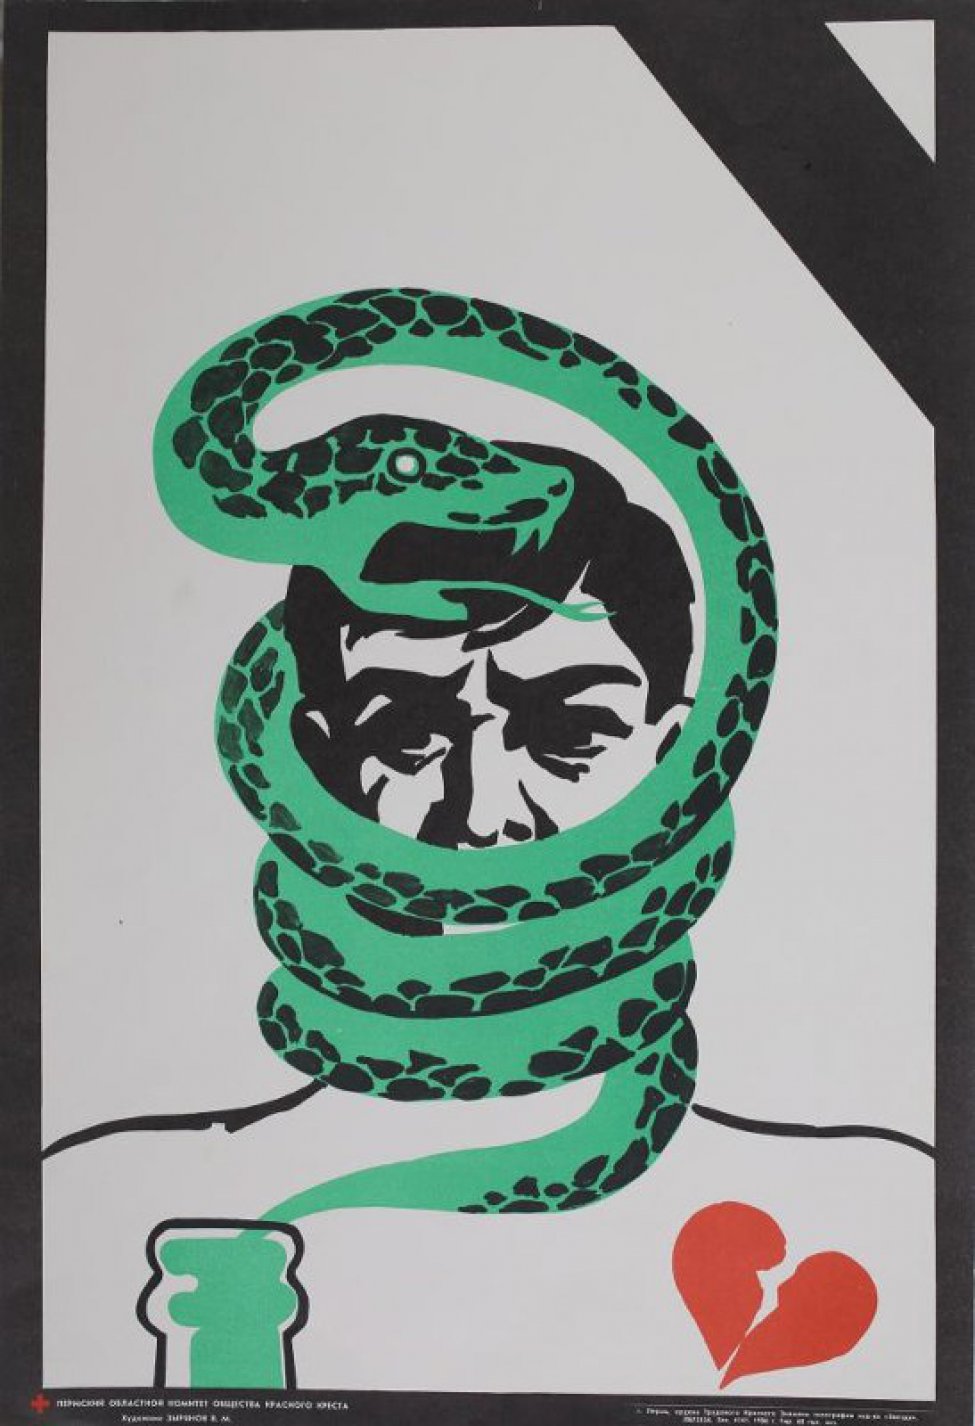 На белом фоне в центре композиции изображена голова мужчины, опутанная змеей. Слева - горлышко бутылки с змеиным хвостом; справа - разбитое сердце.